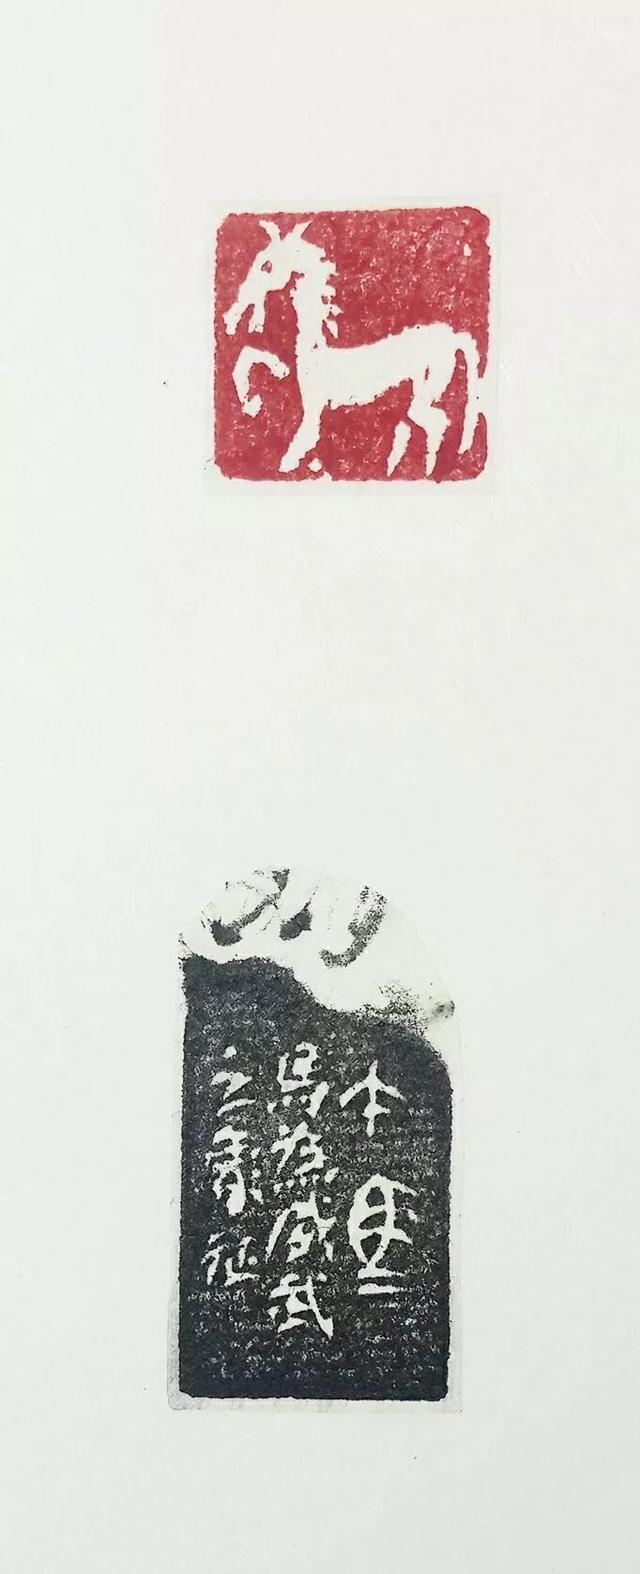 意于古会妙造神传篆刻家李公峰肖形印艺术赏析